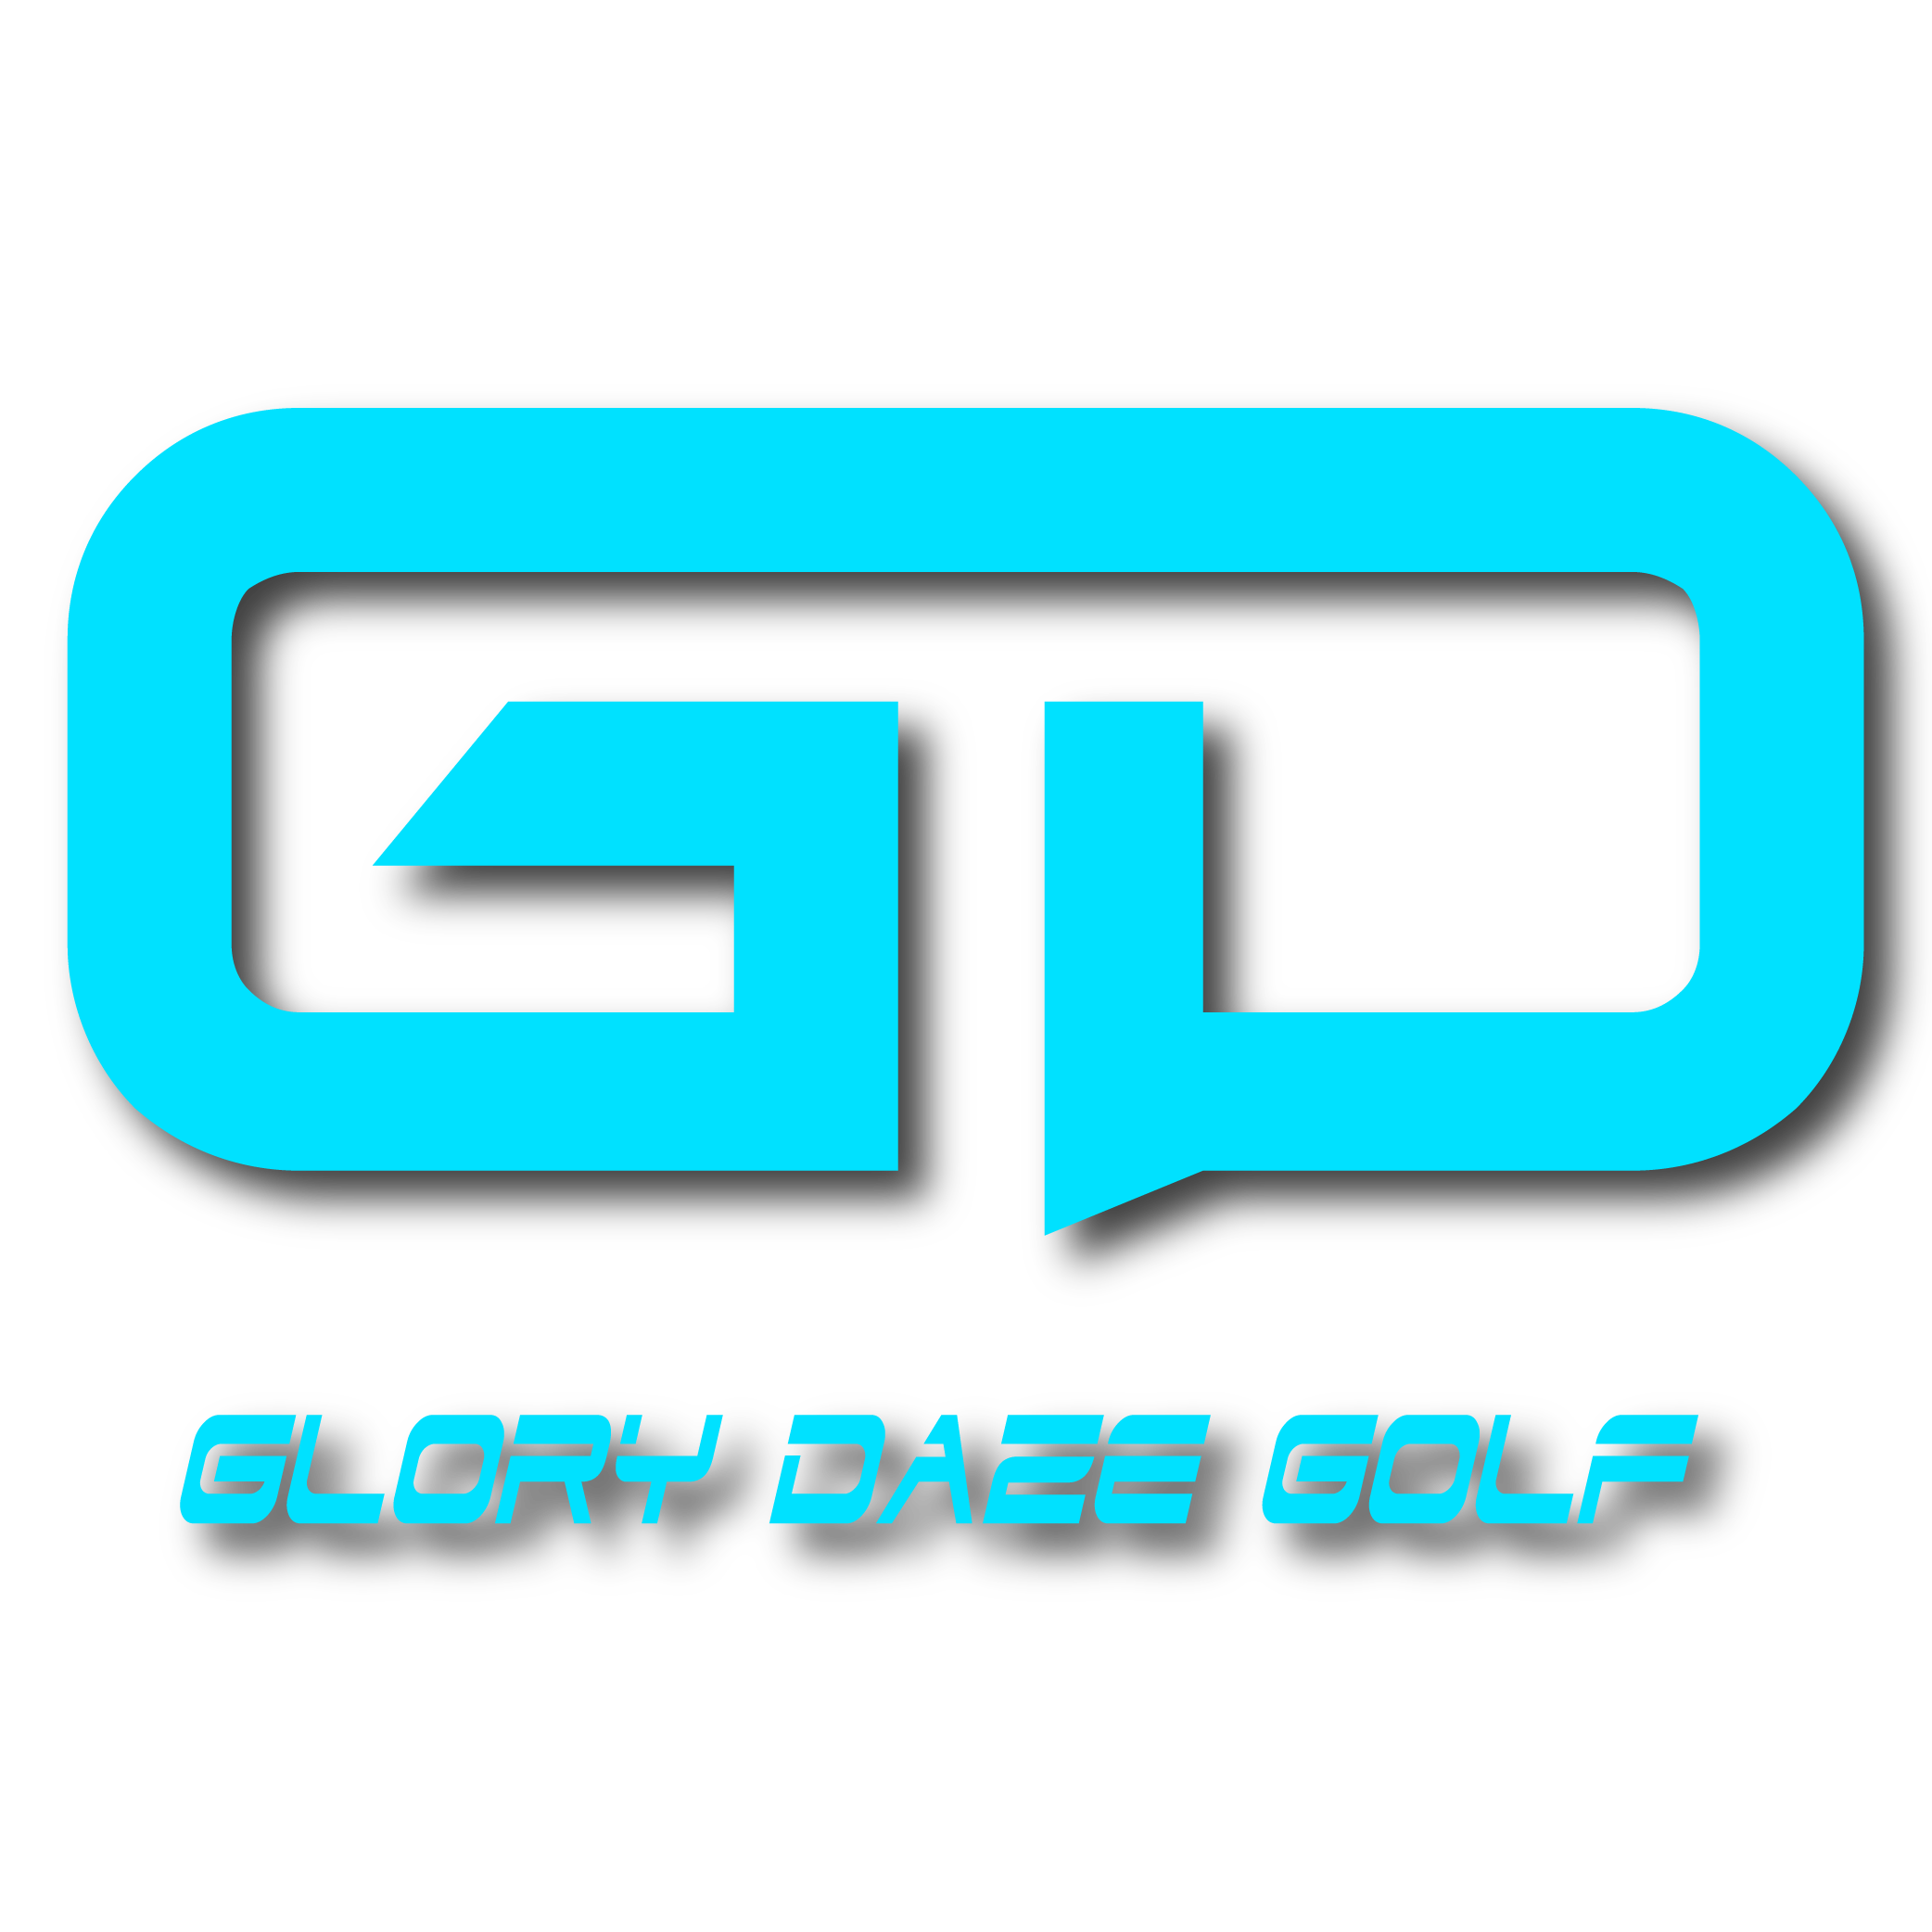 Glory Daze Golf